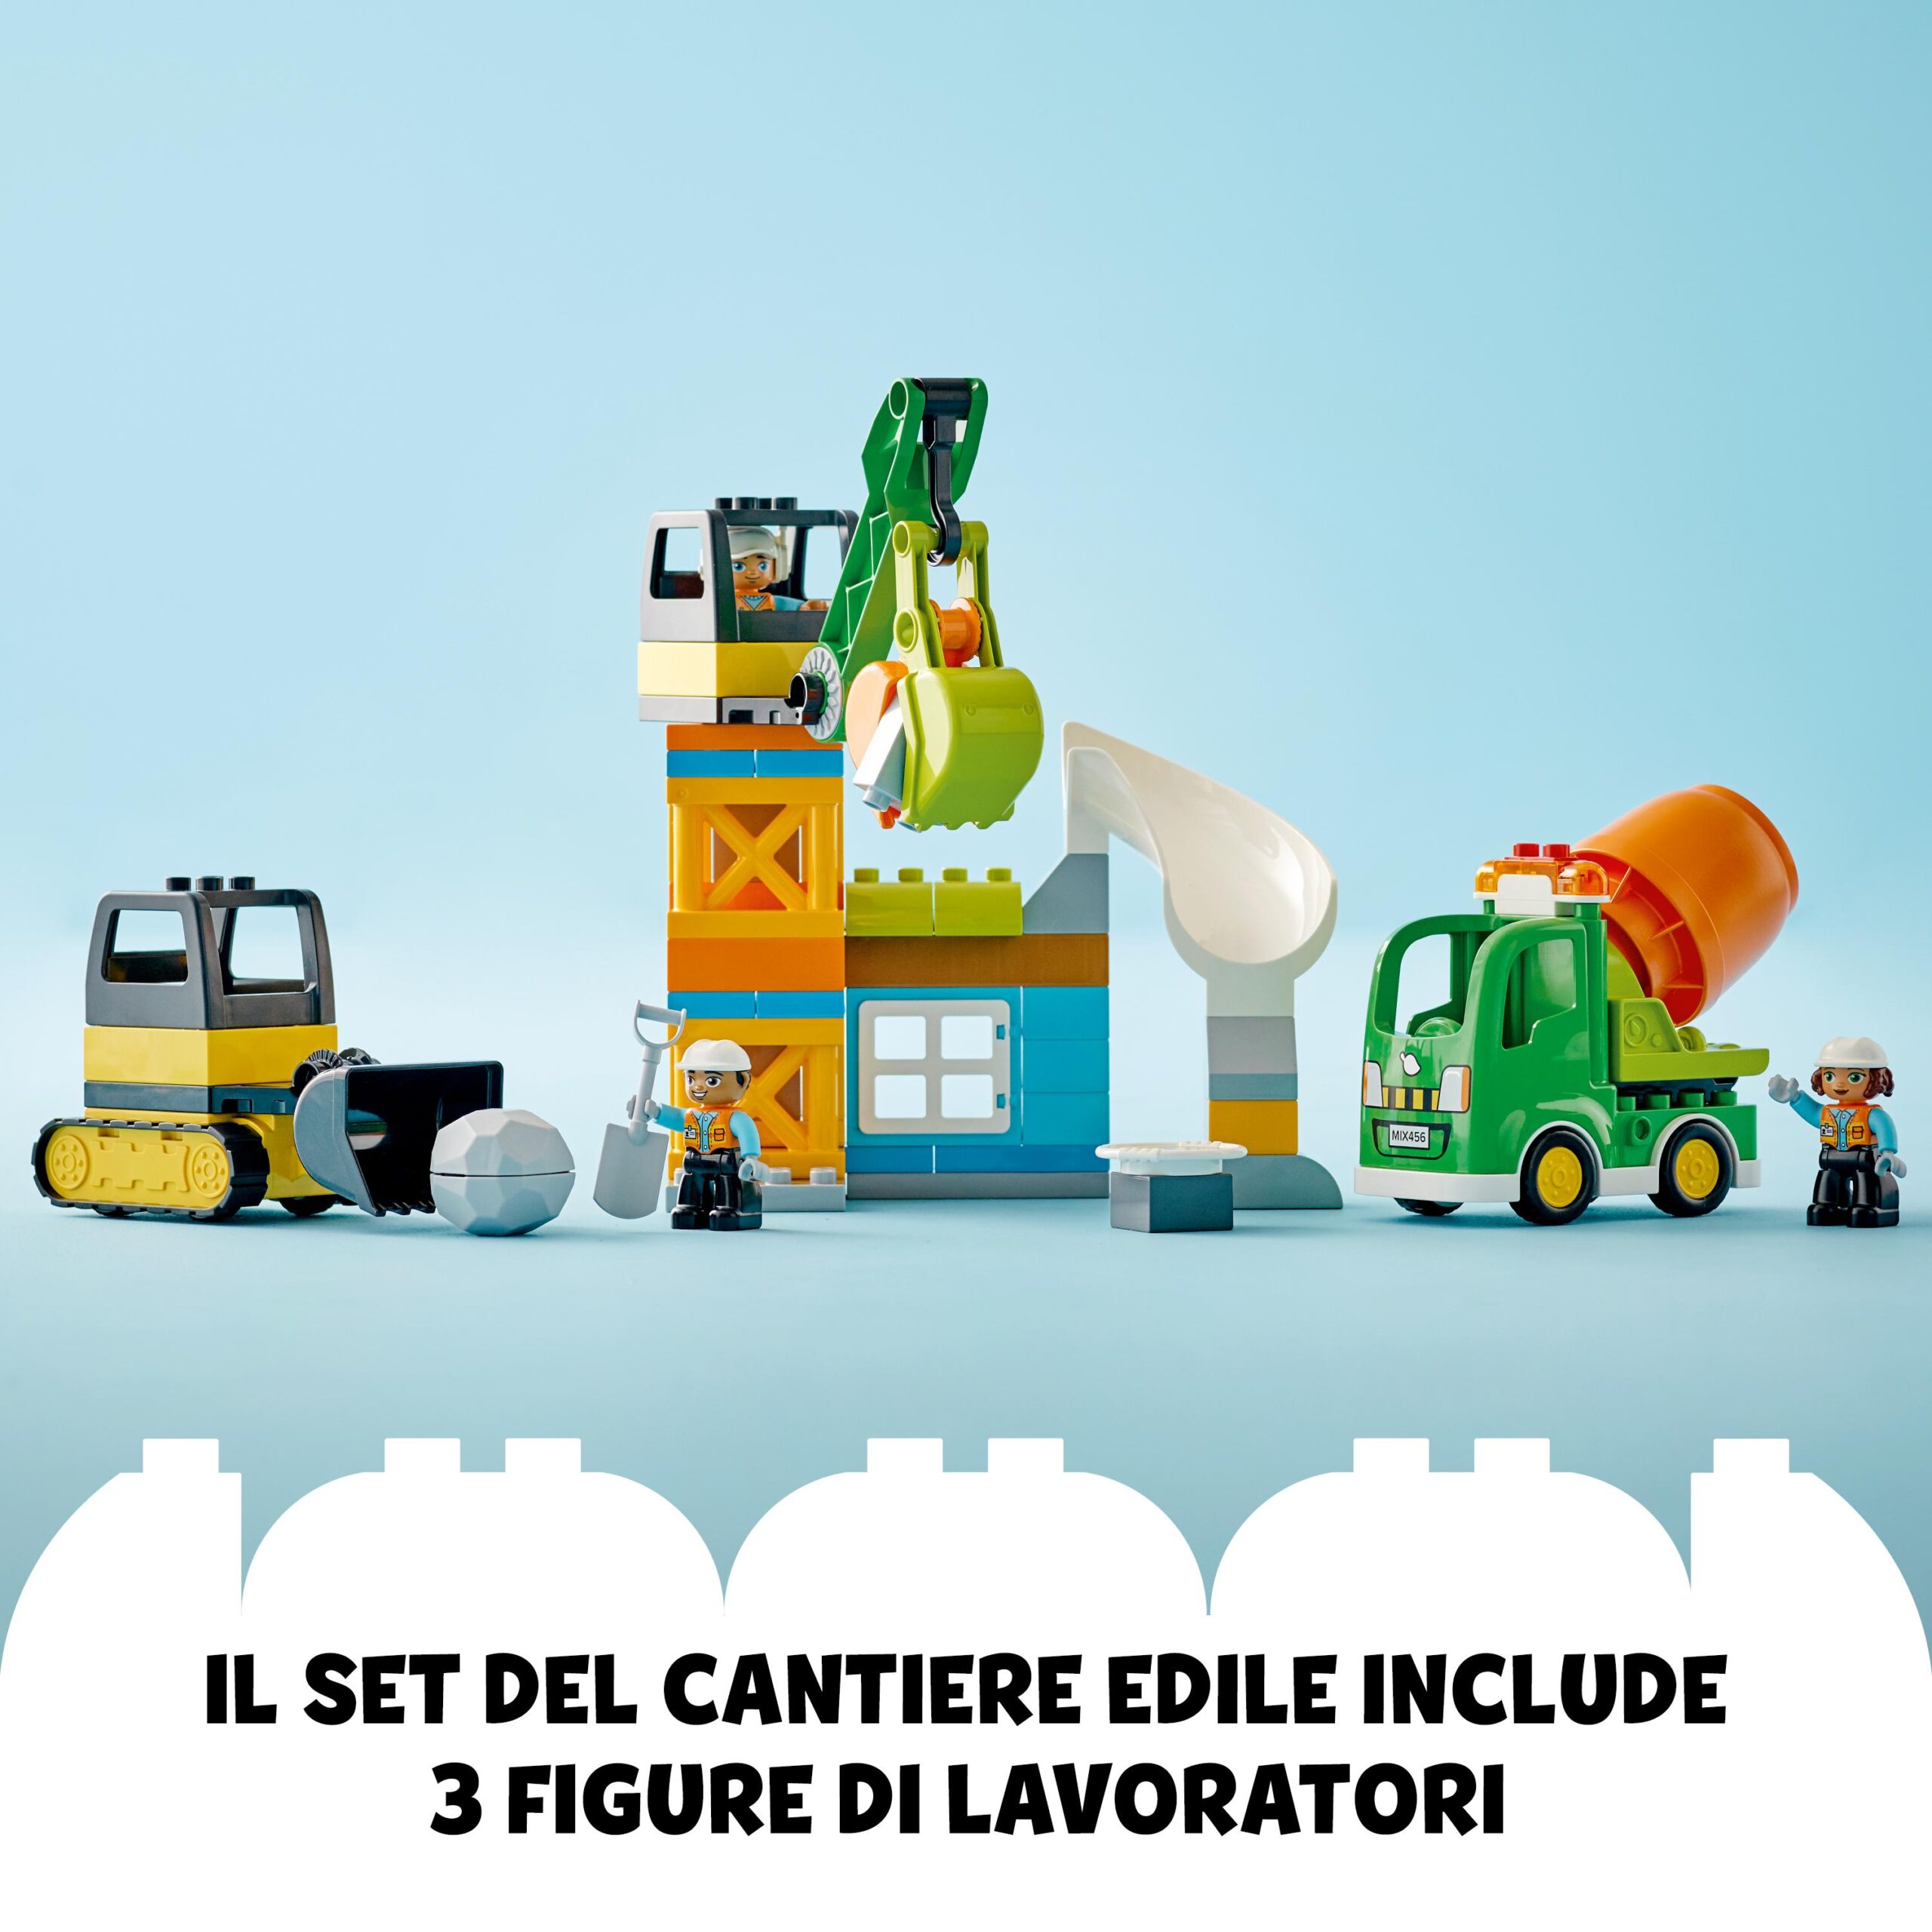 Lego duplo town 10990 cantiere edile con bulldozer, betoniera e gru giocattolo, giocattoli per bambini con mattoncini grandi - LEGO DUPLO